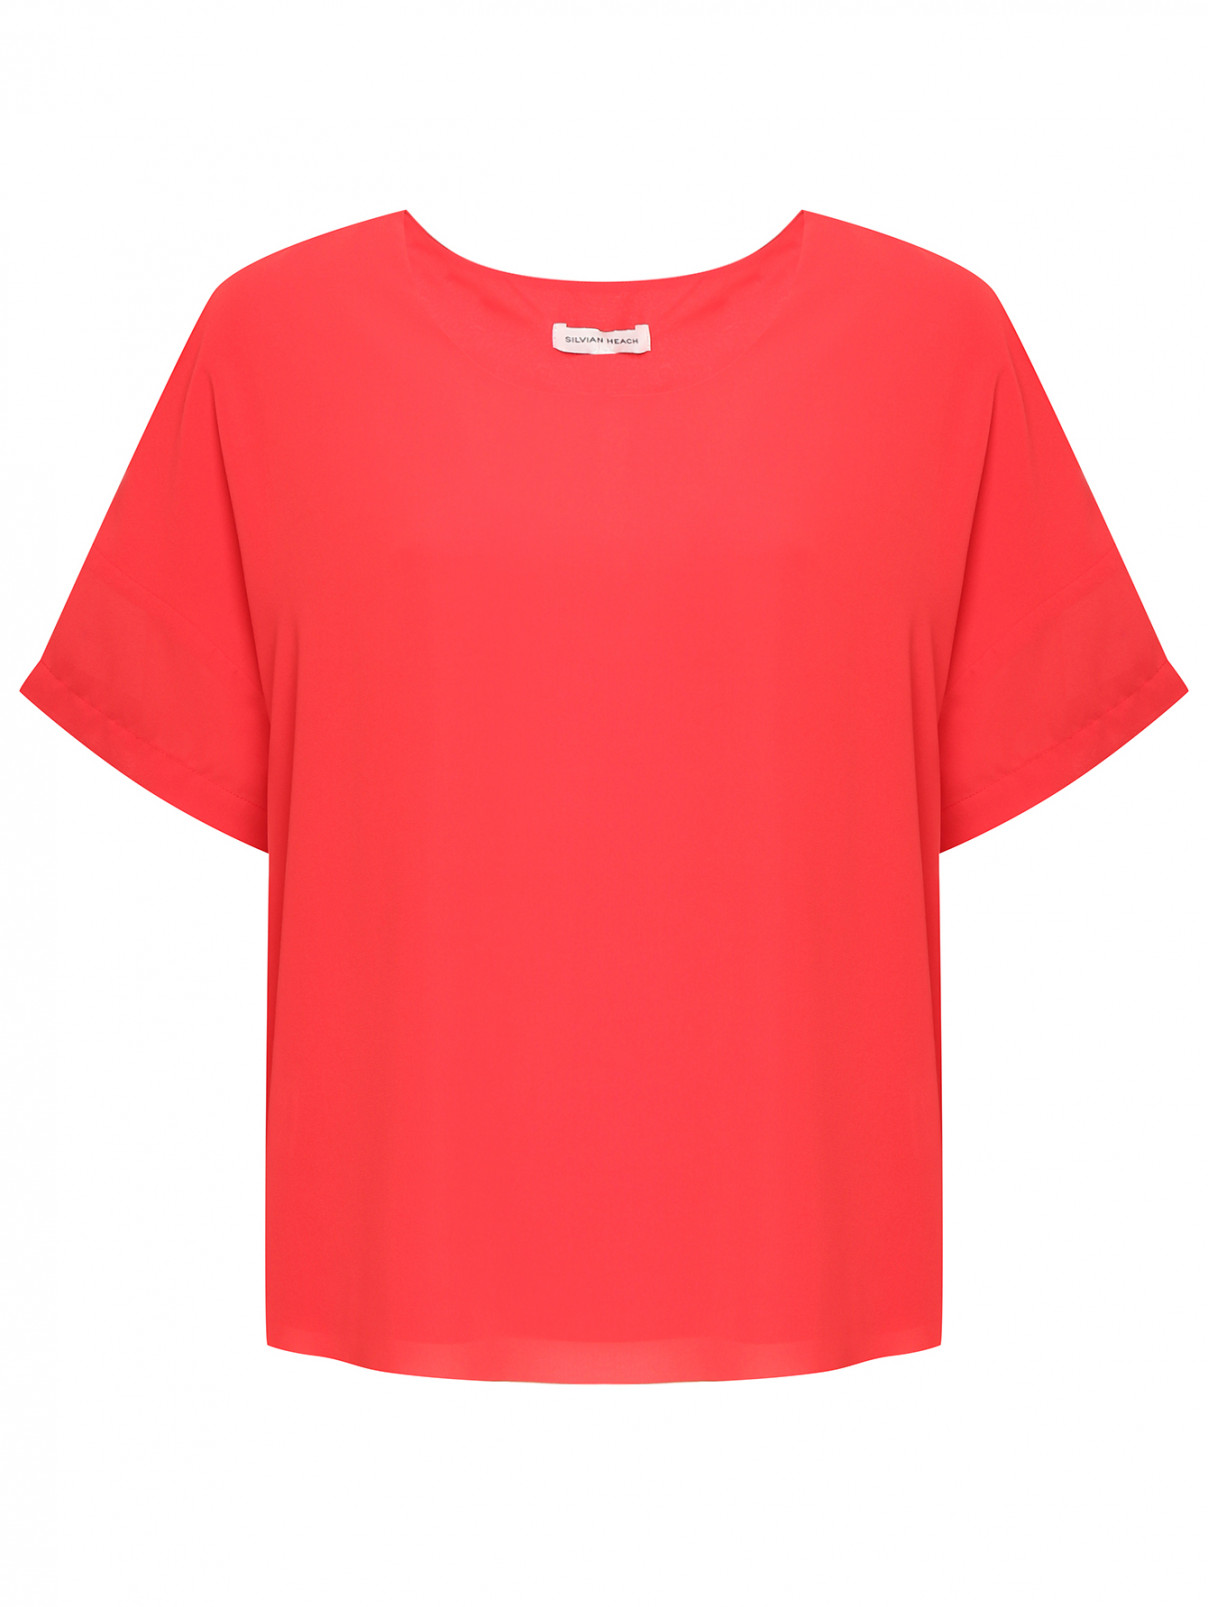 Однотонная блуза с коротким рукавом SILVIAN HEACH  –  Общий вид  – Цвет:  Красный